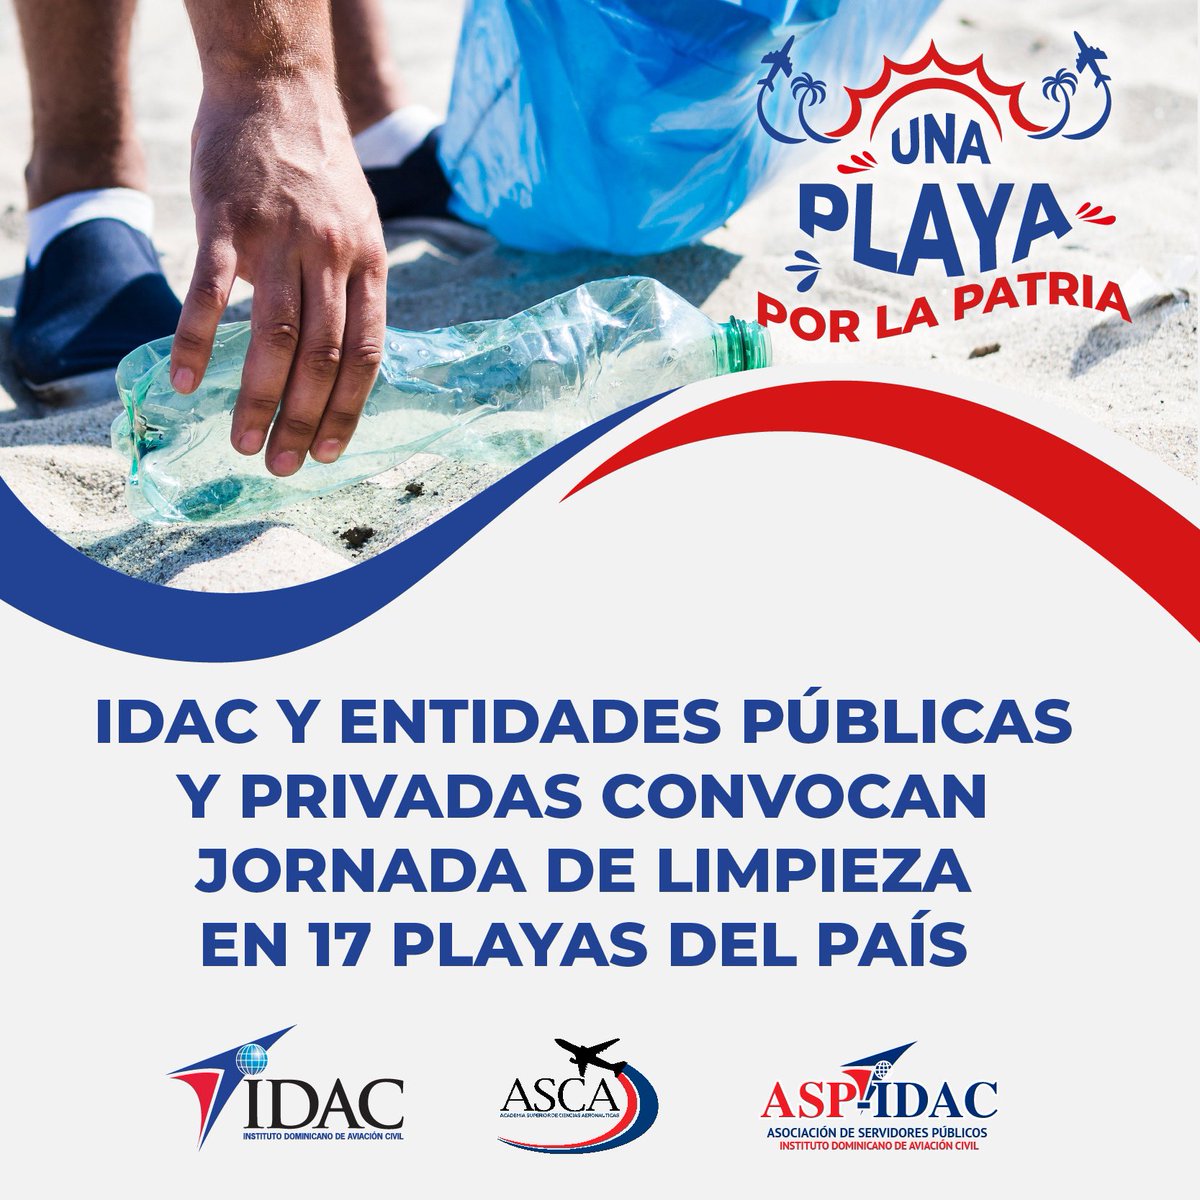 El IDAC, en coordinación con ASP-IDAC y voluntarios de diversas entidades públicas y privadas, desarrollarán el sábado 25 de marzo una amplia jornada de limpieza de costas en diferentes regiones del territorio nacional. idac.gob.do/el-idac-y-enti…